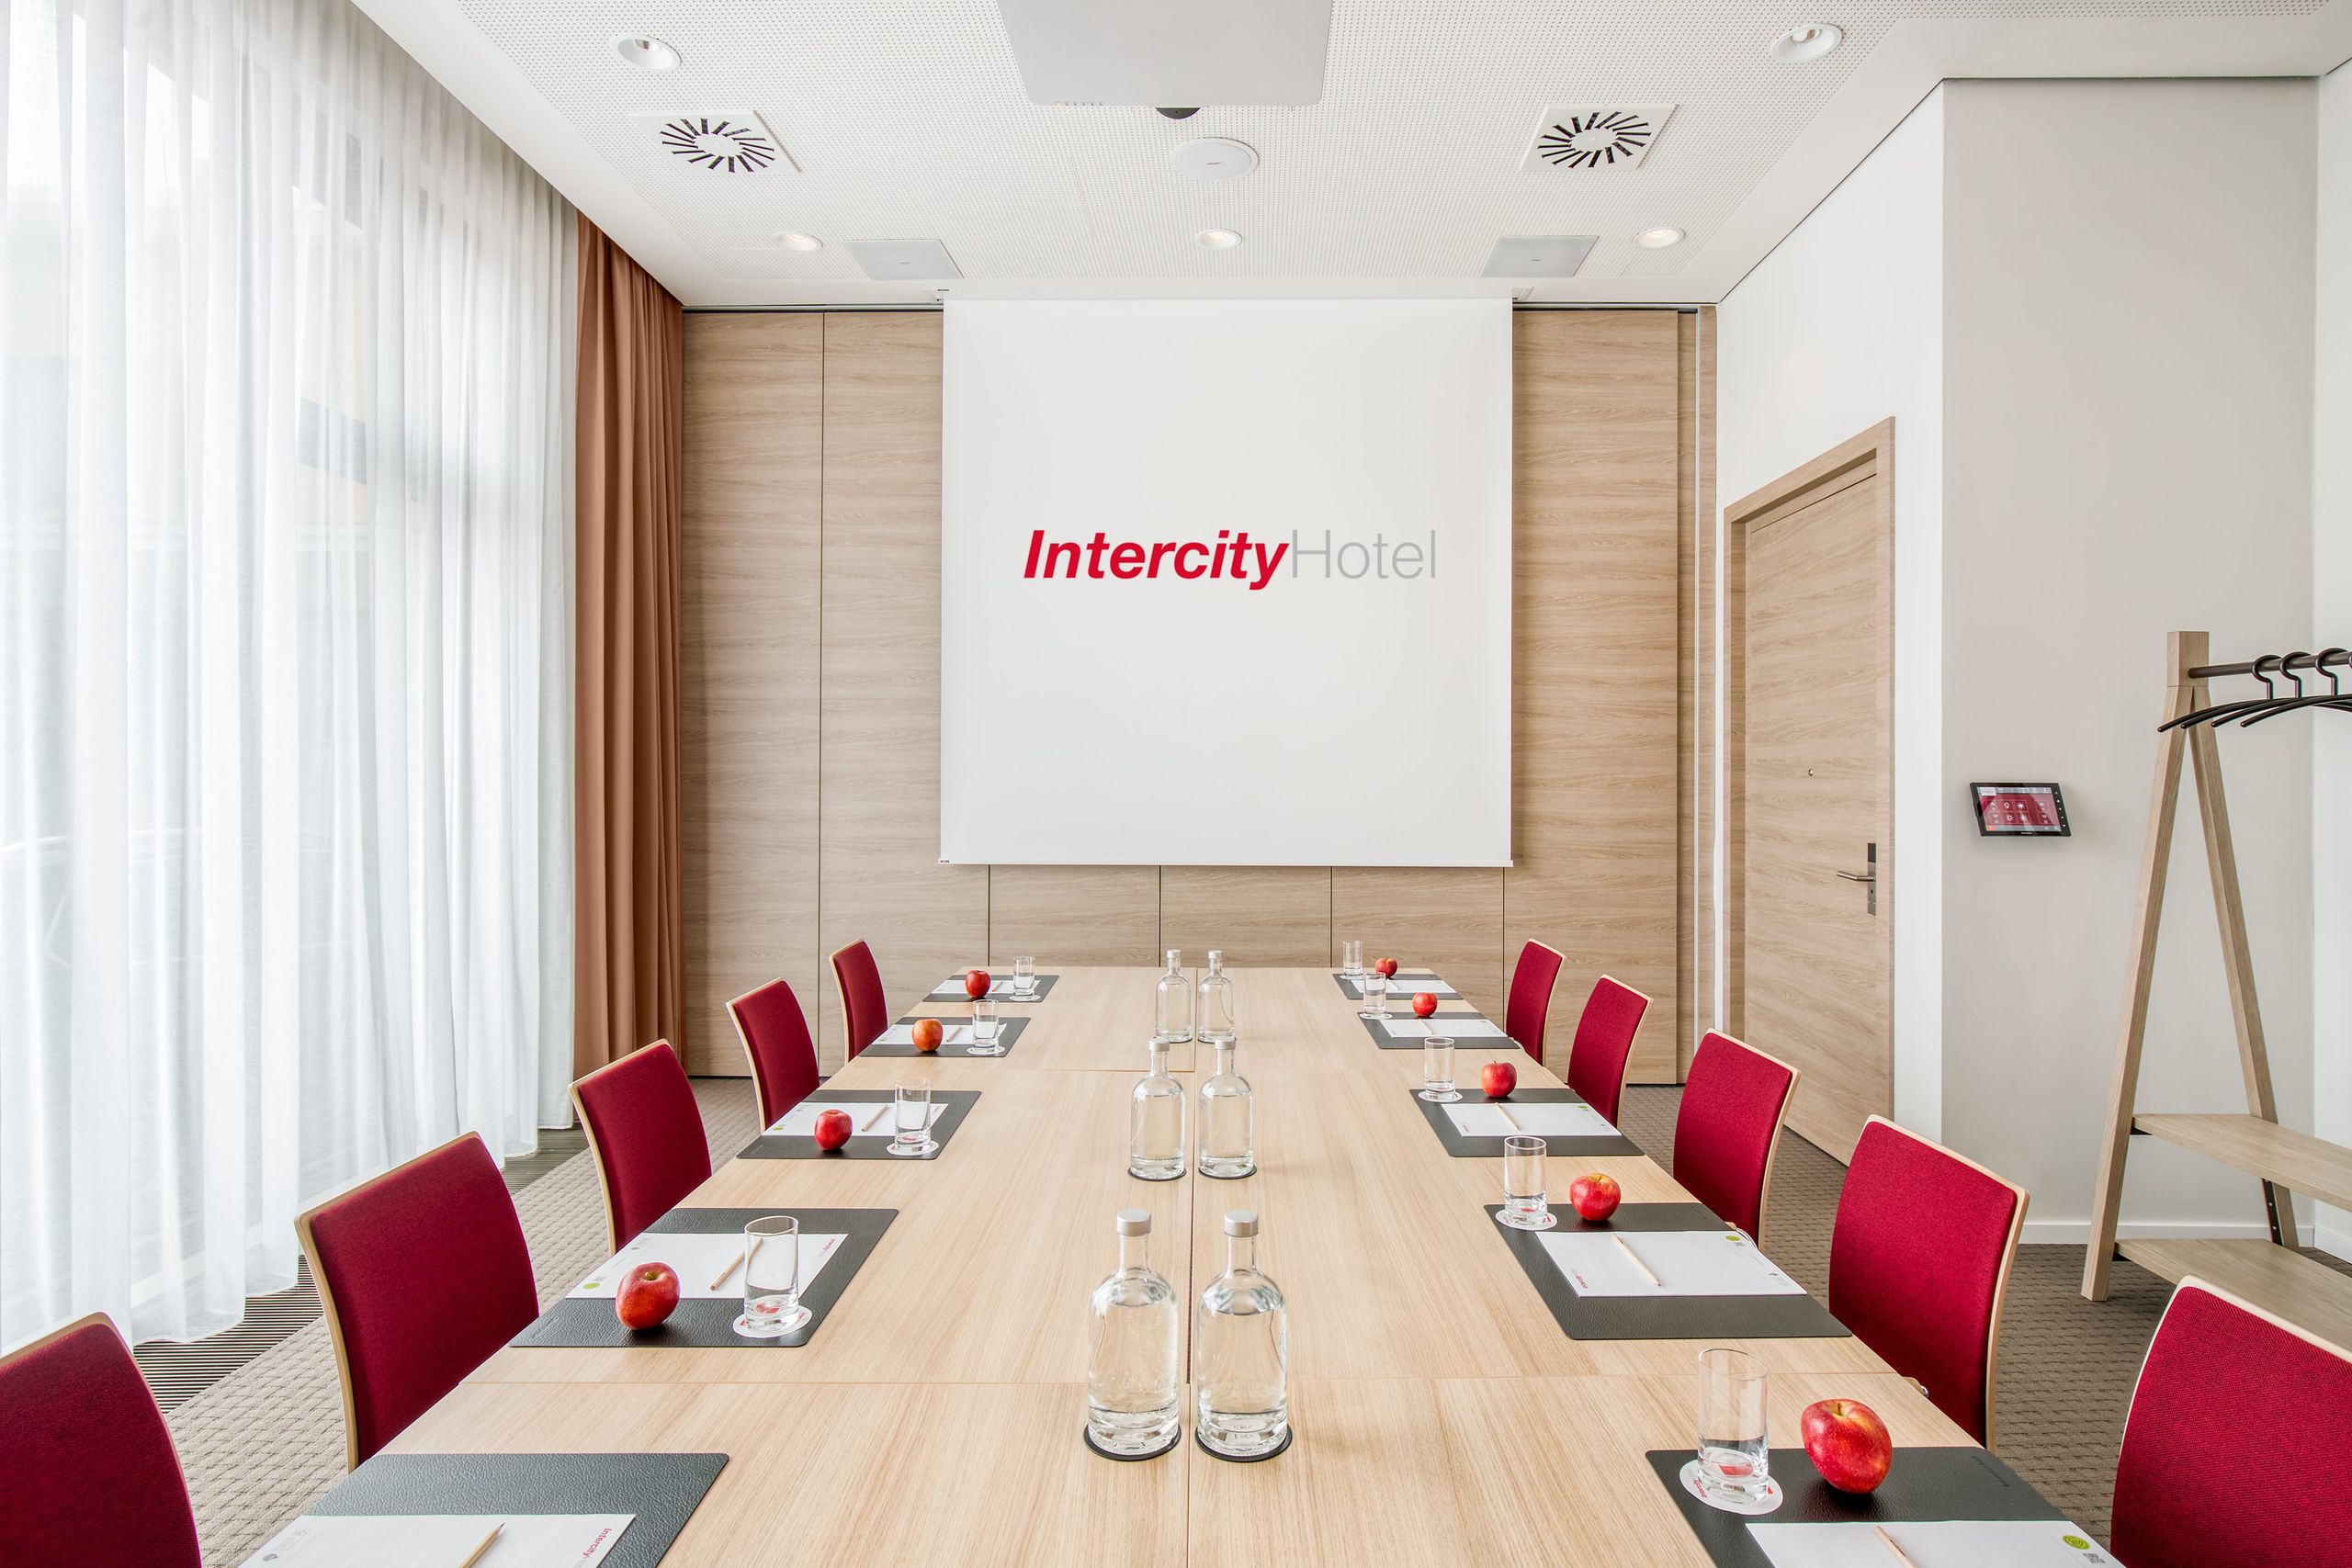 IntercityHotel Hildesheim - Találkozók - Incentives - Konferenciatermek - Rendezvények - Események